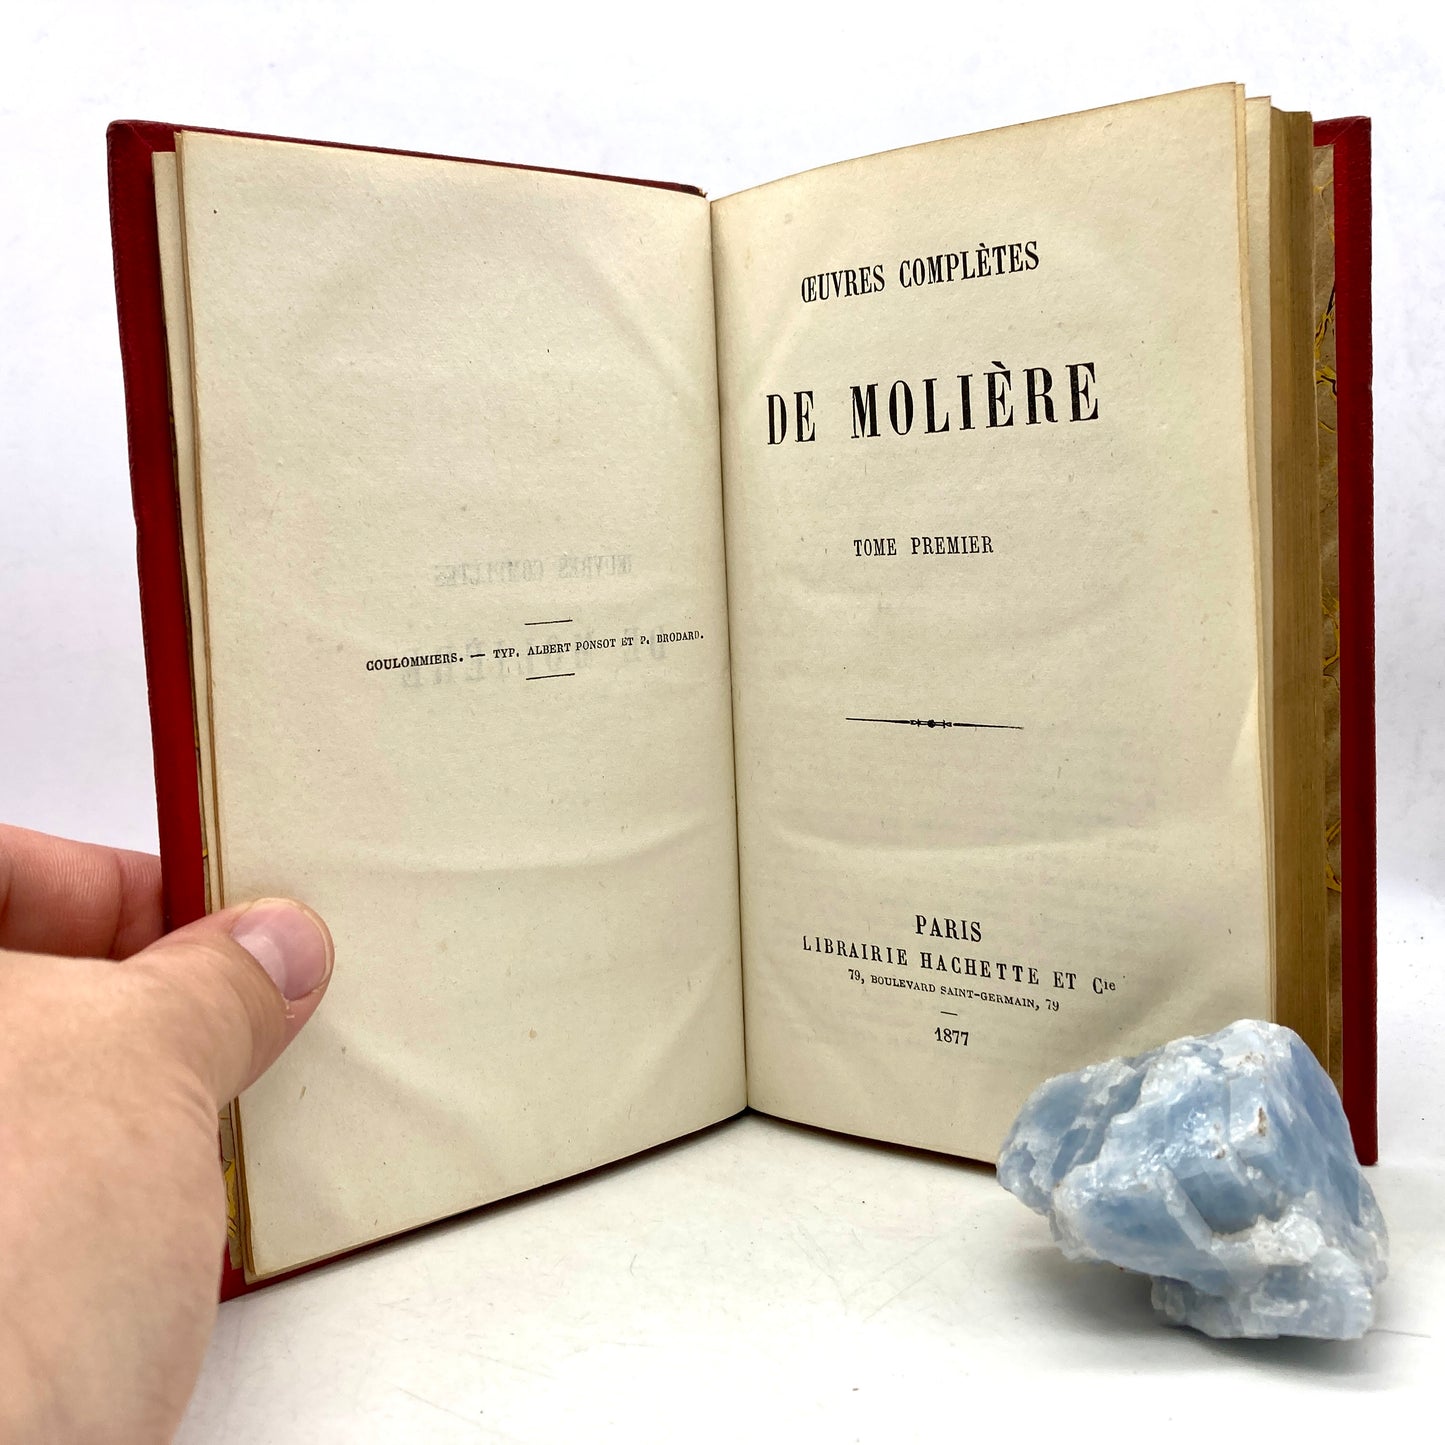 MOLIERE "Oeuvres Completes de Moliere" [Librairie Hachette et cie, 1877]